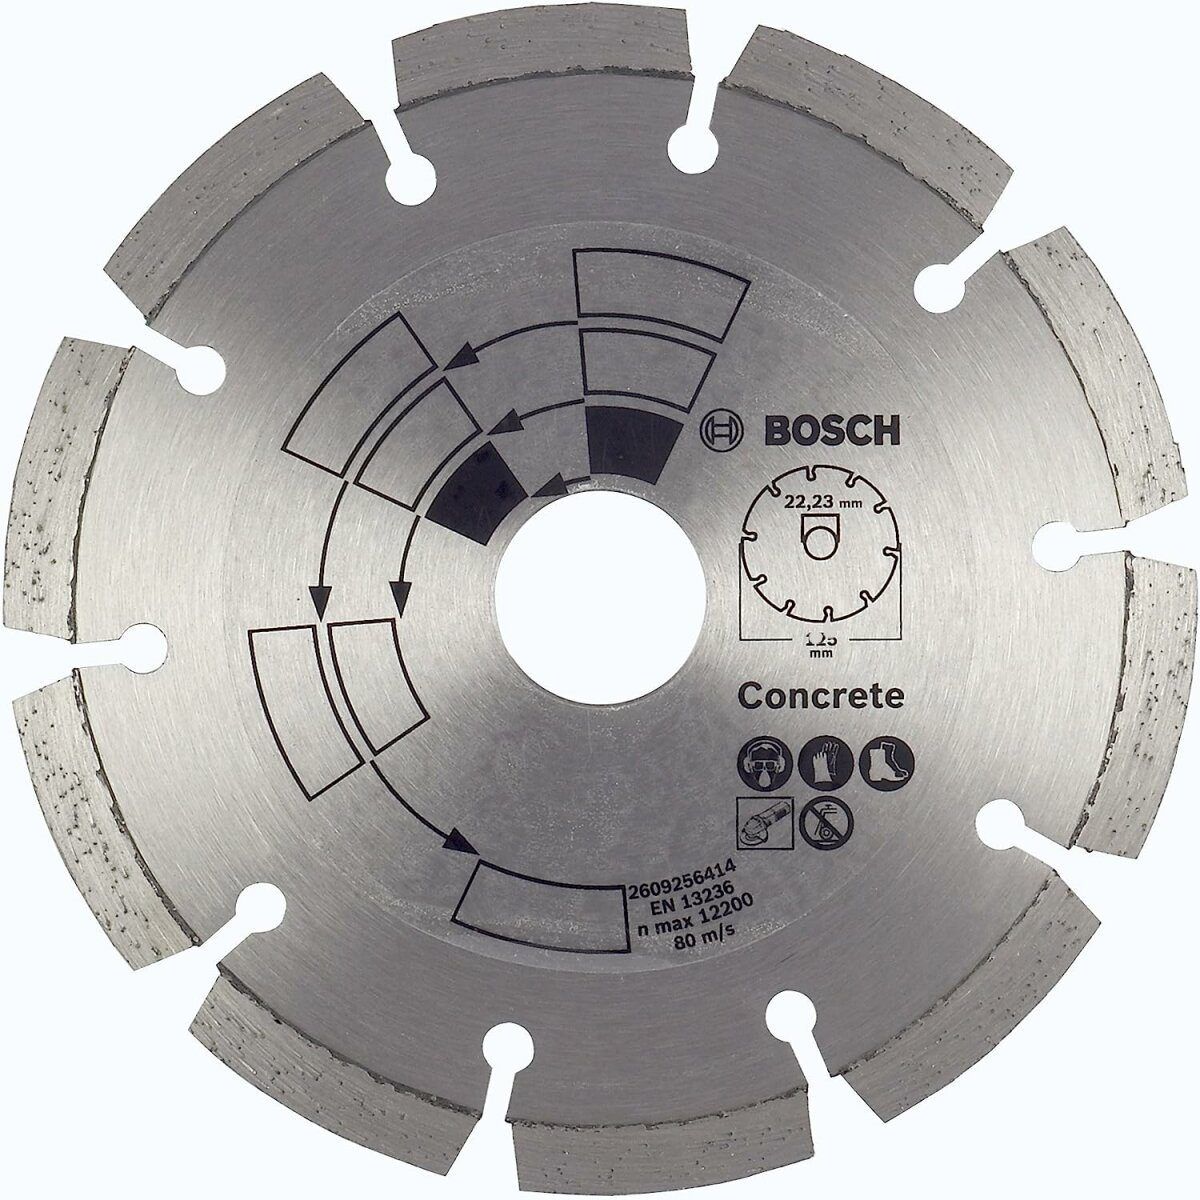 BOSCH Bohrfutter Bosch 2609256413 DIY Diamanttrennscheibe Beton Top Beton/Granit, 115